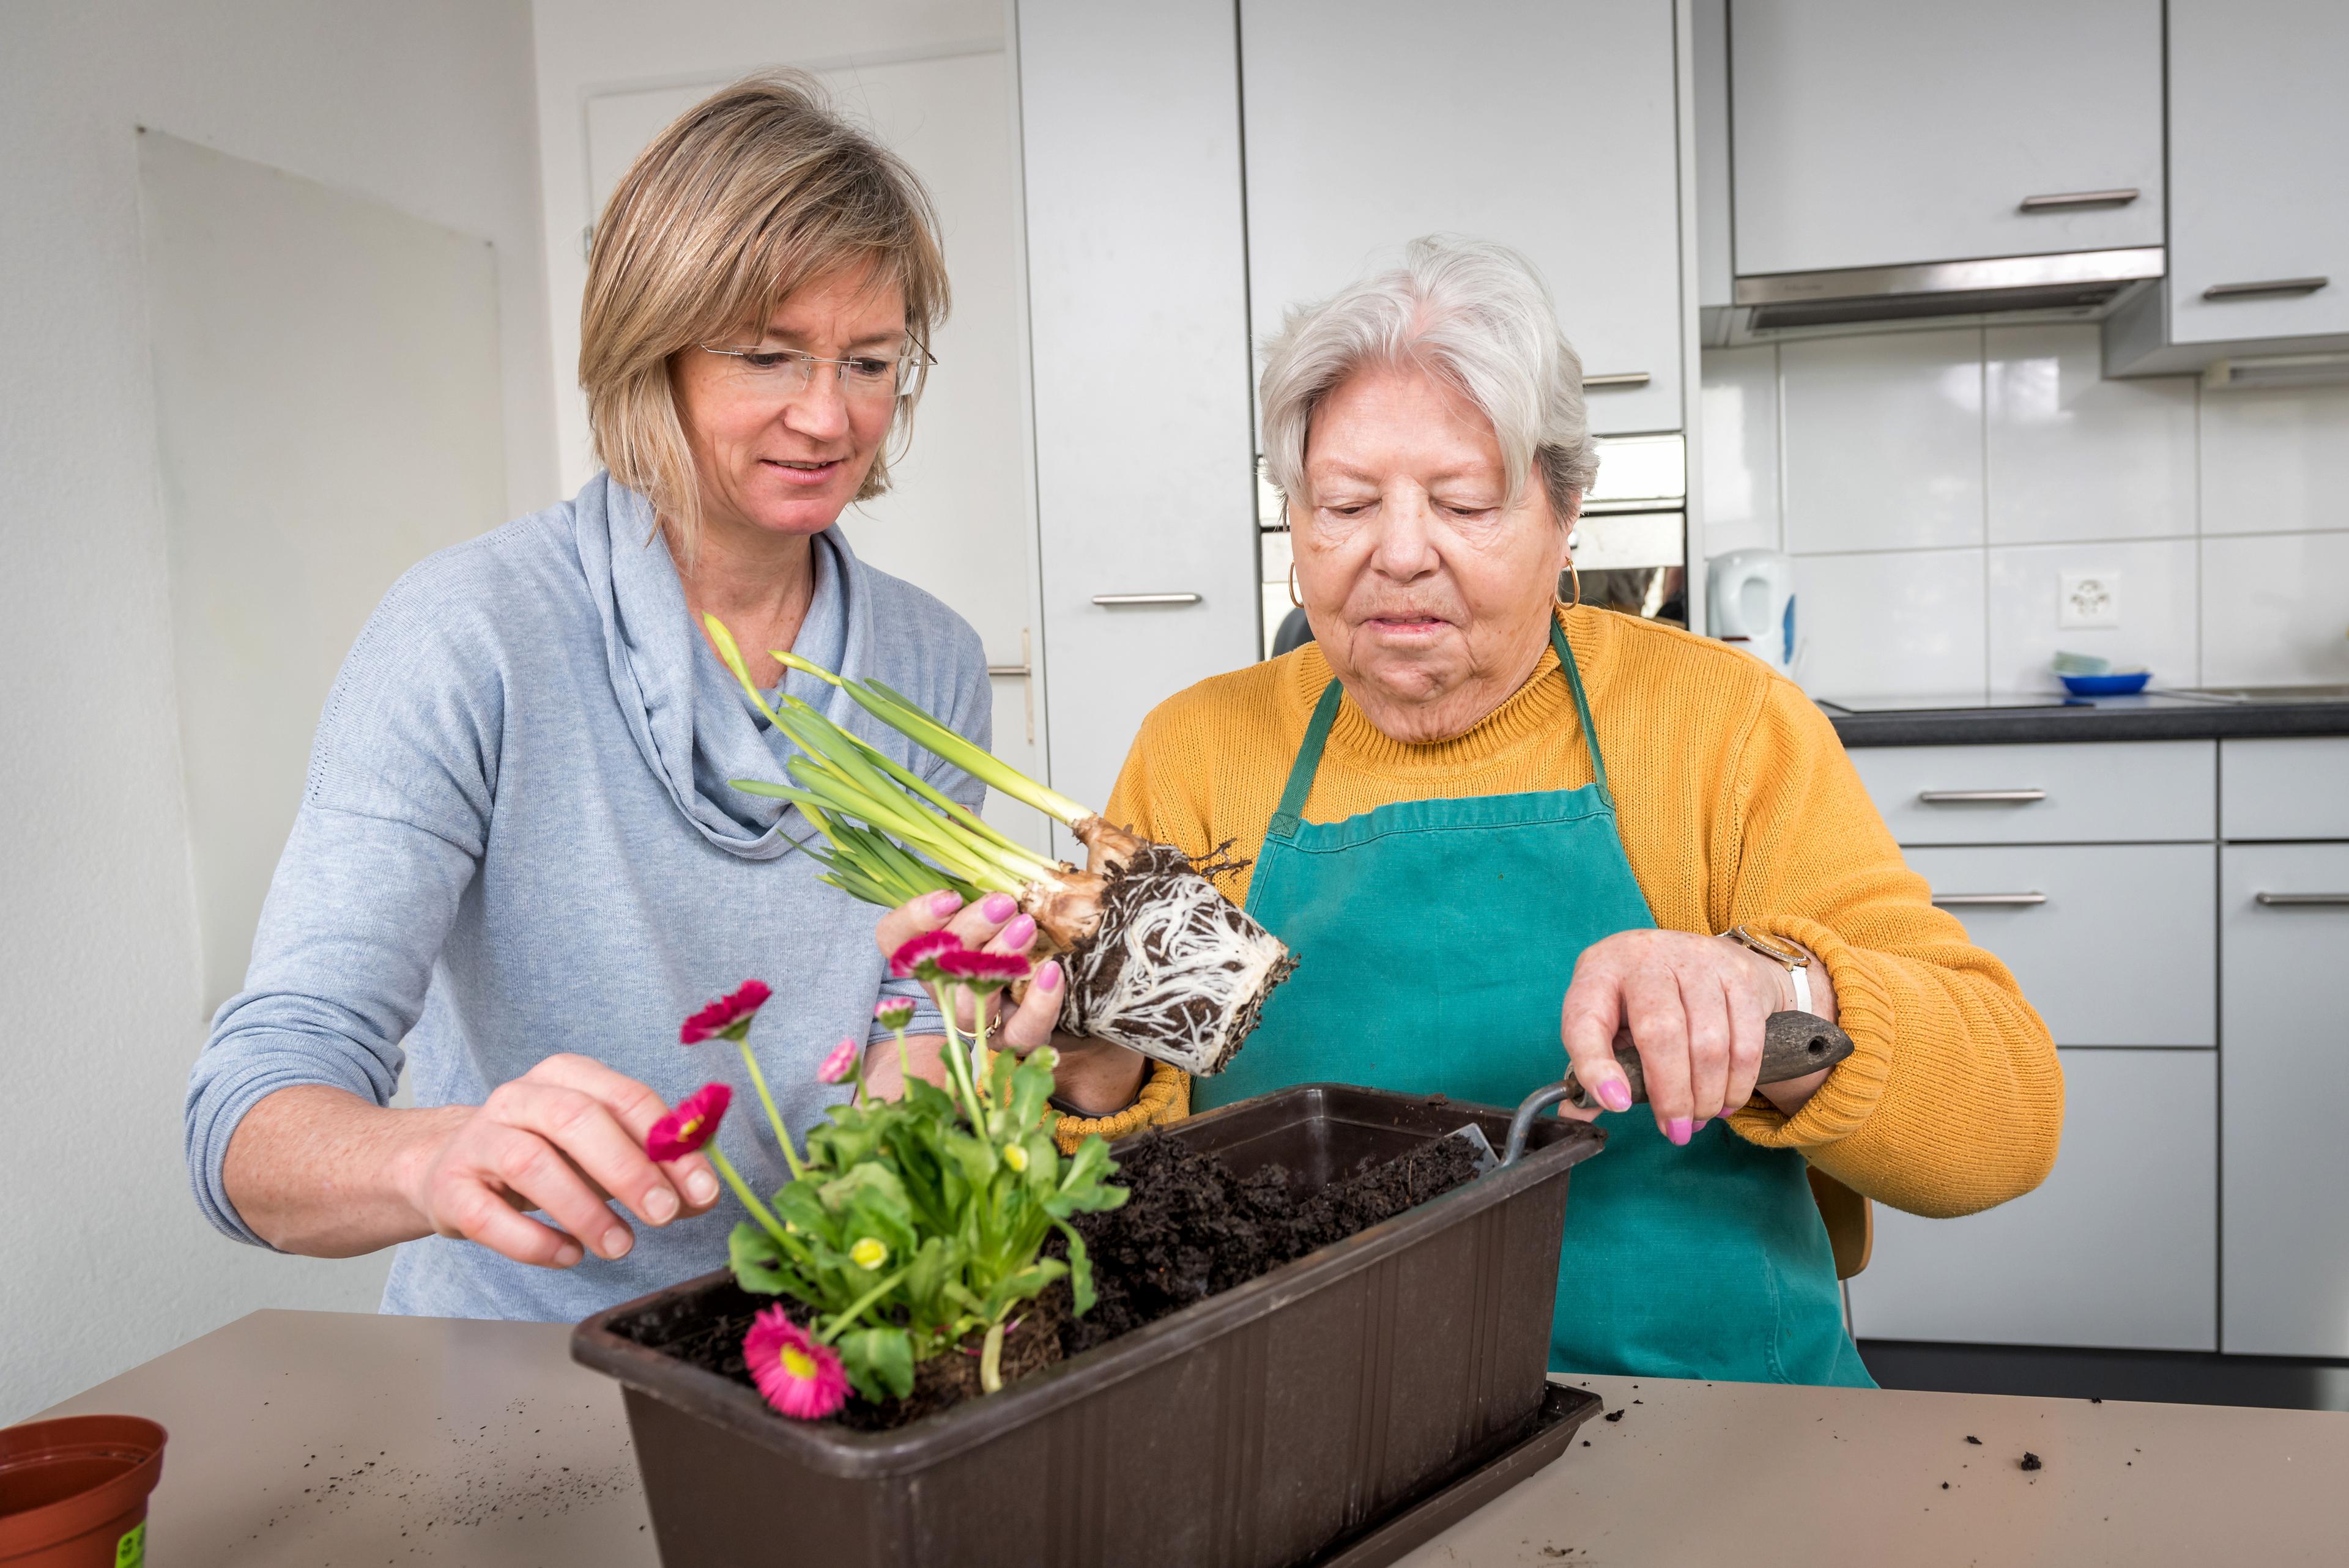 Une patiente met des fleurs en pot avec le soutien de son ergothérapeute.